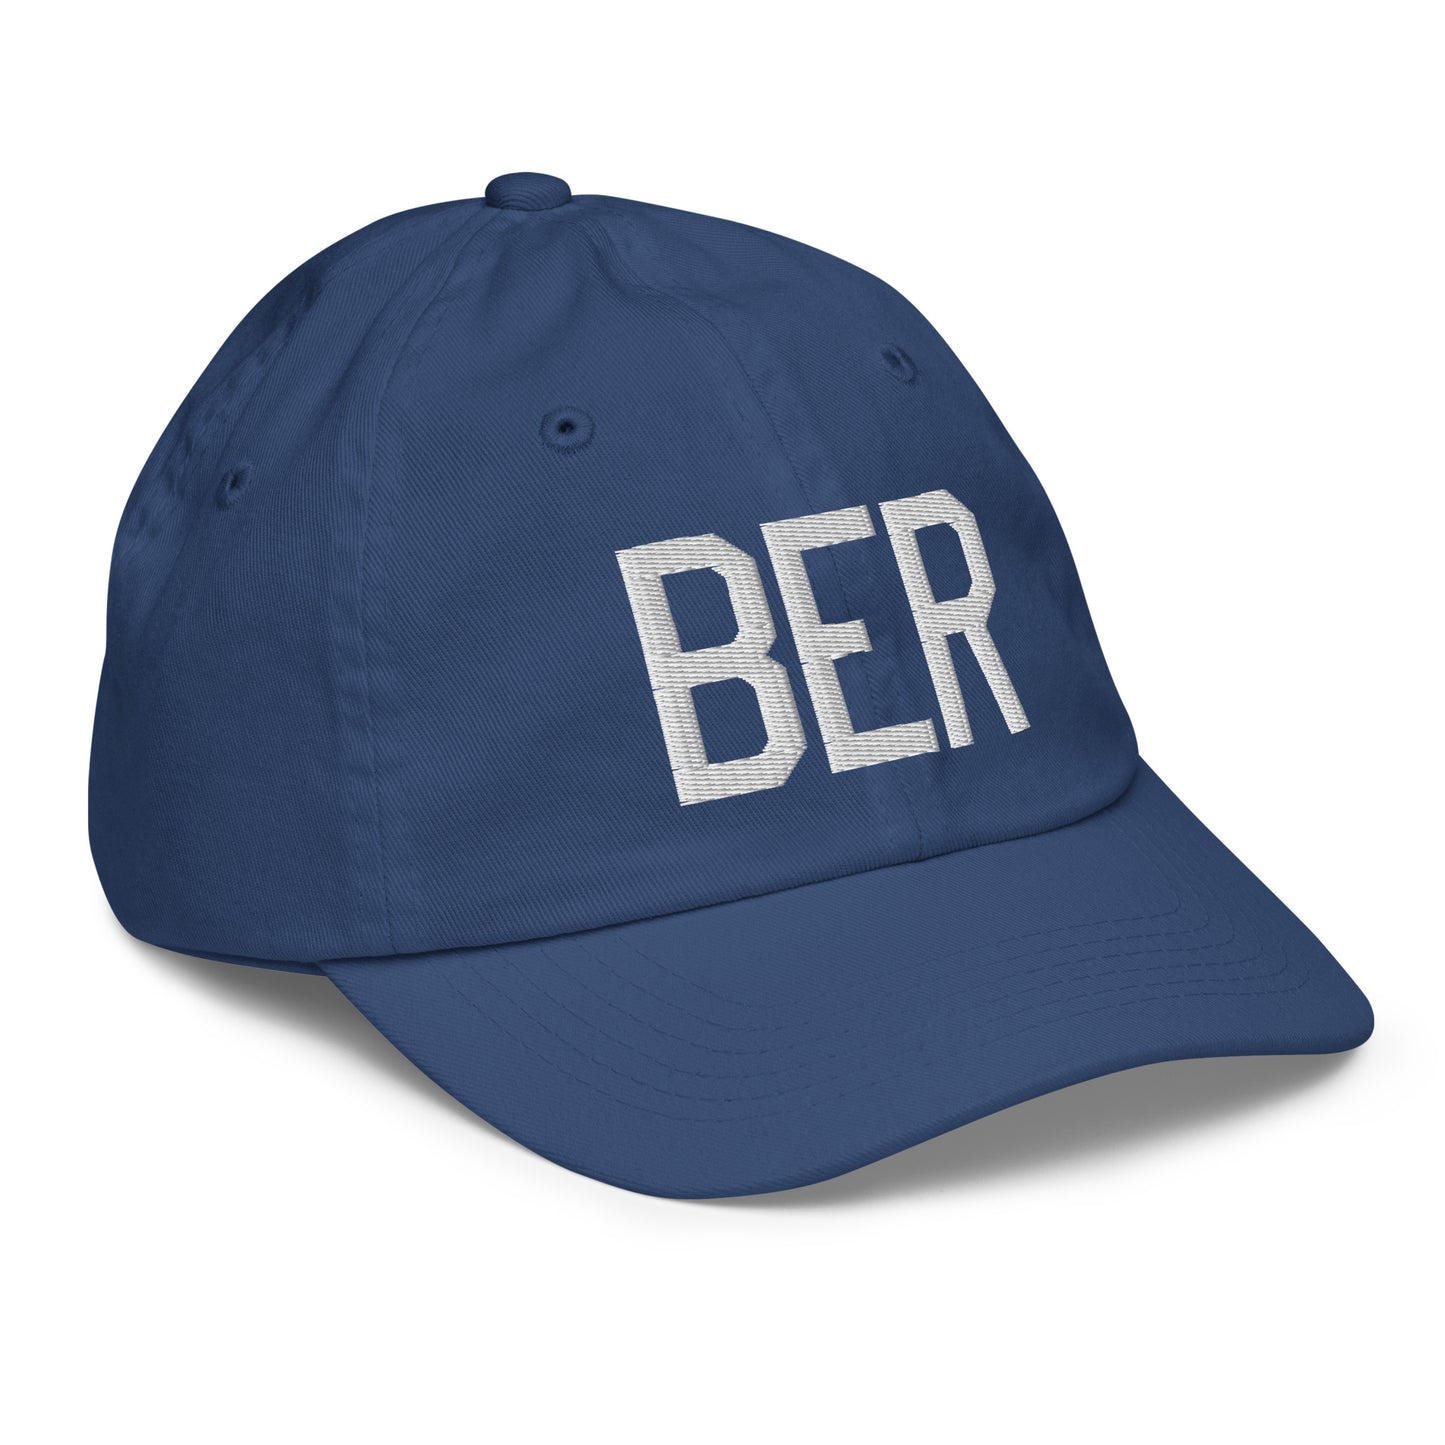 Airport Code Kid's Baseball Cap - White • BER Berlin • YHM Designs - Image 21